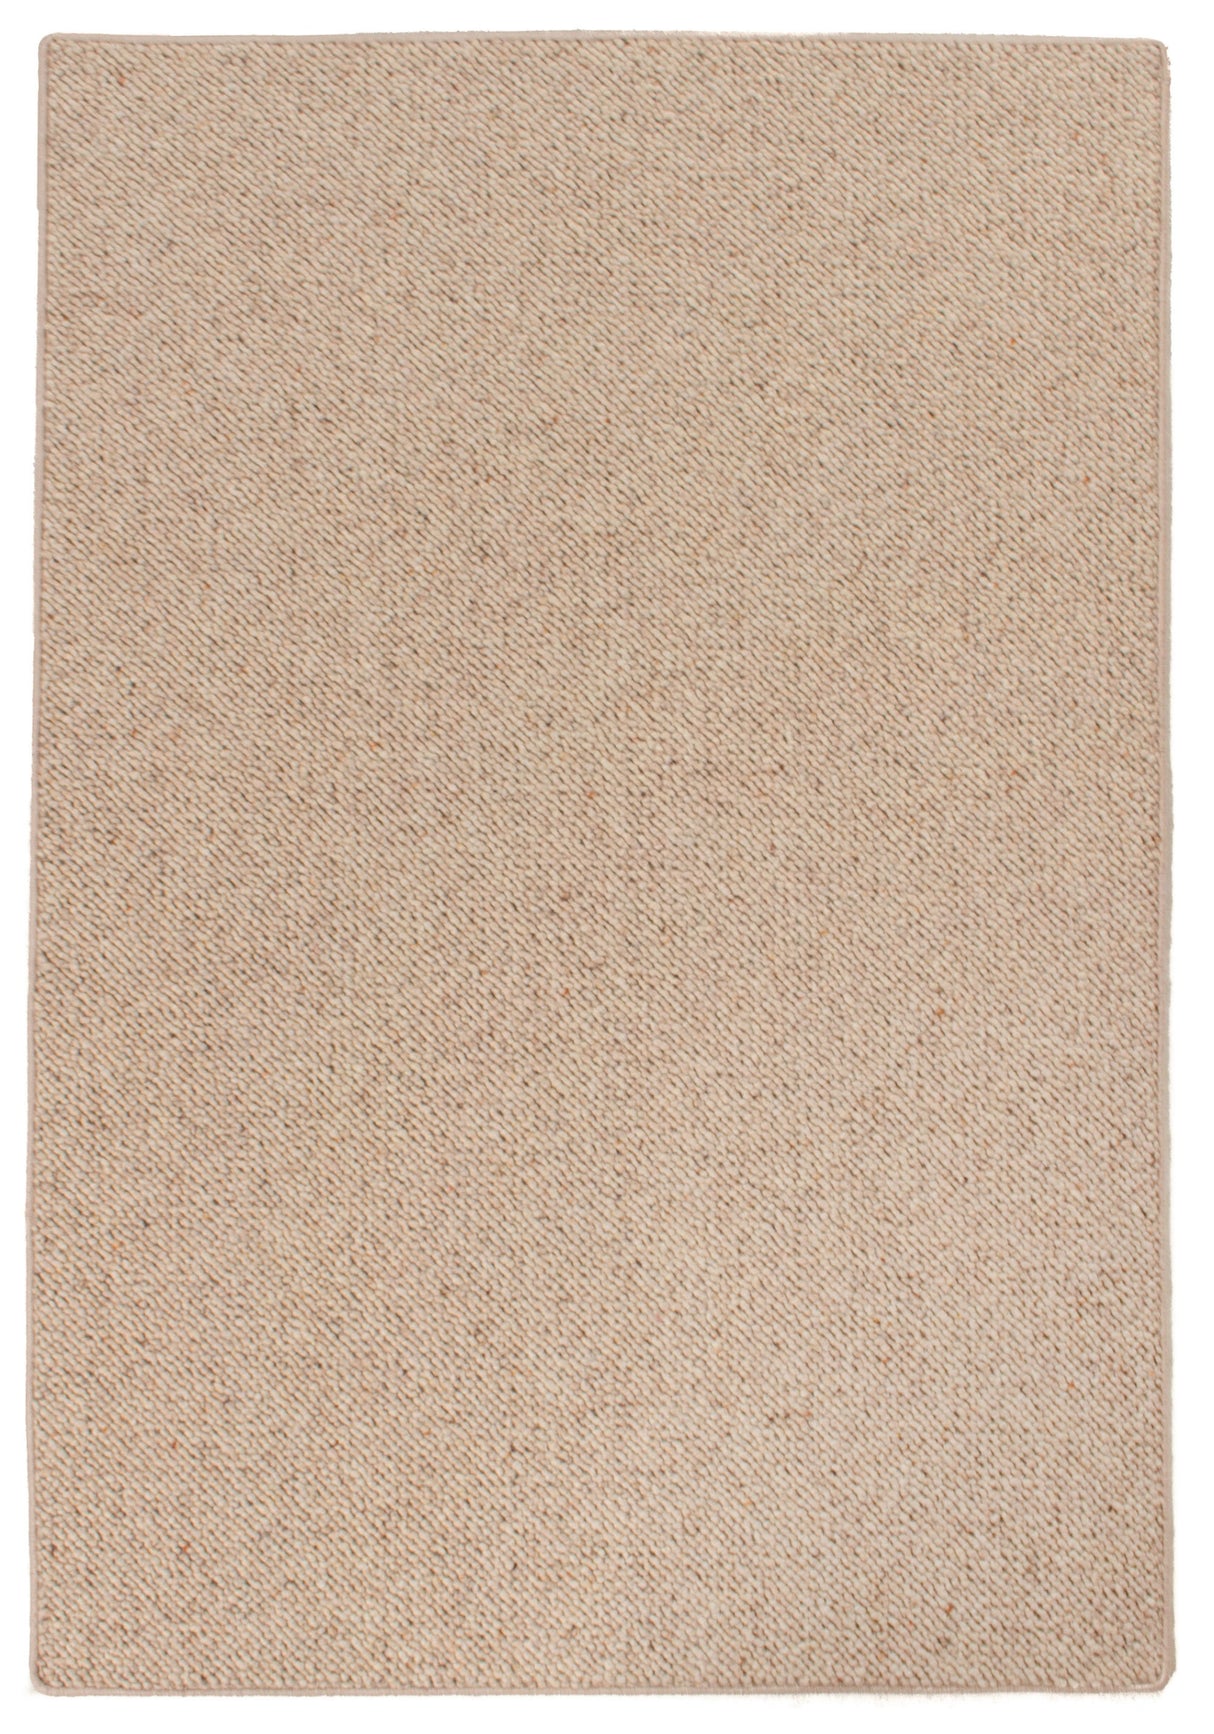 Tapete moderno de bolas de lã lisa | 120x80cm